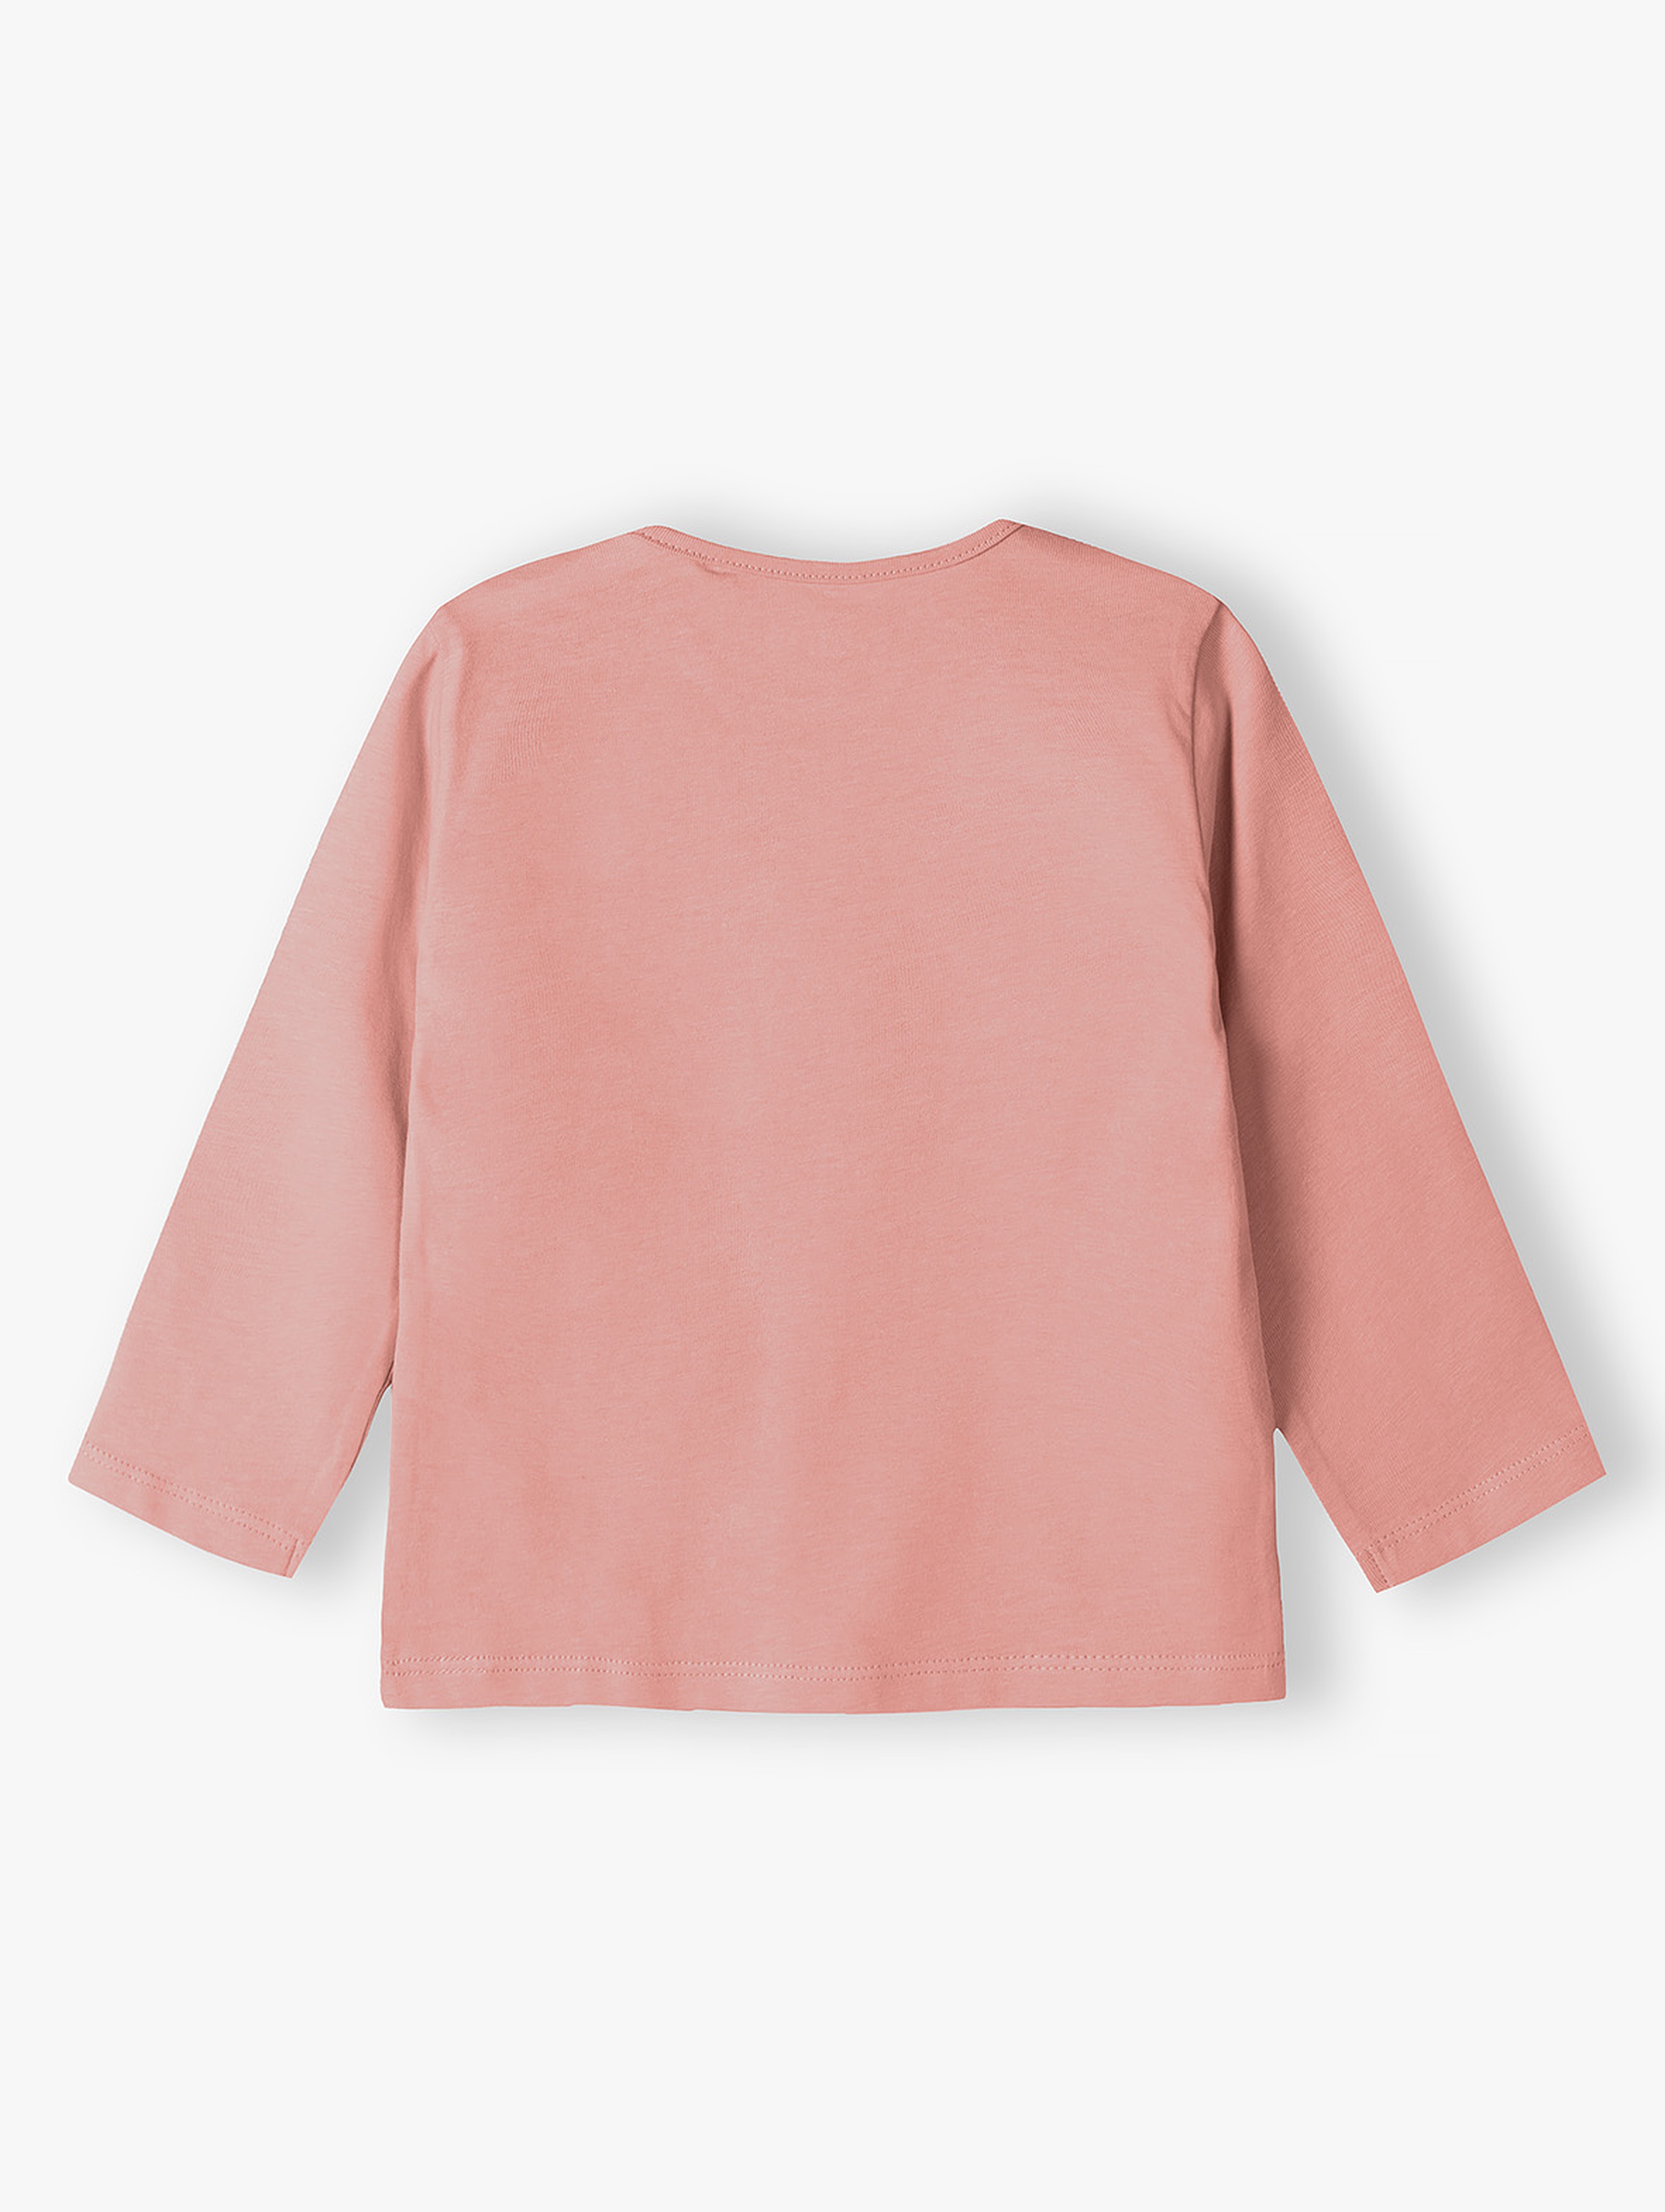 Różowa bawełniana bluzka niemowlęca z napisem - Króliczek mamusi